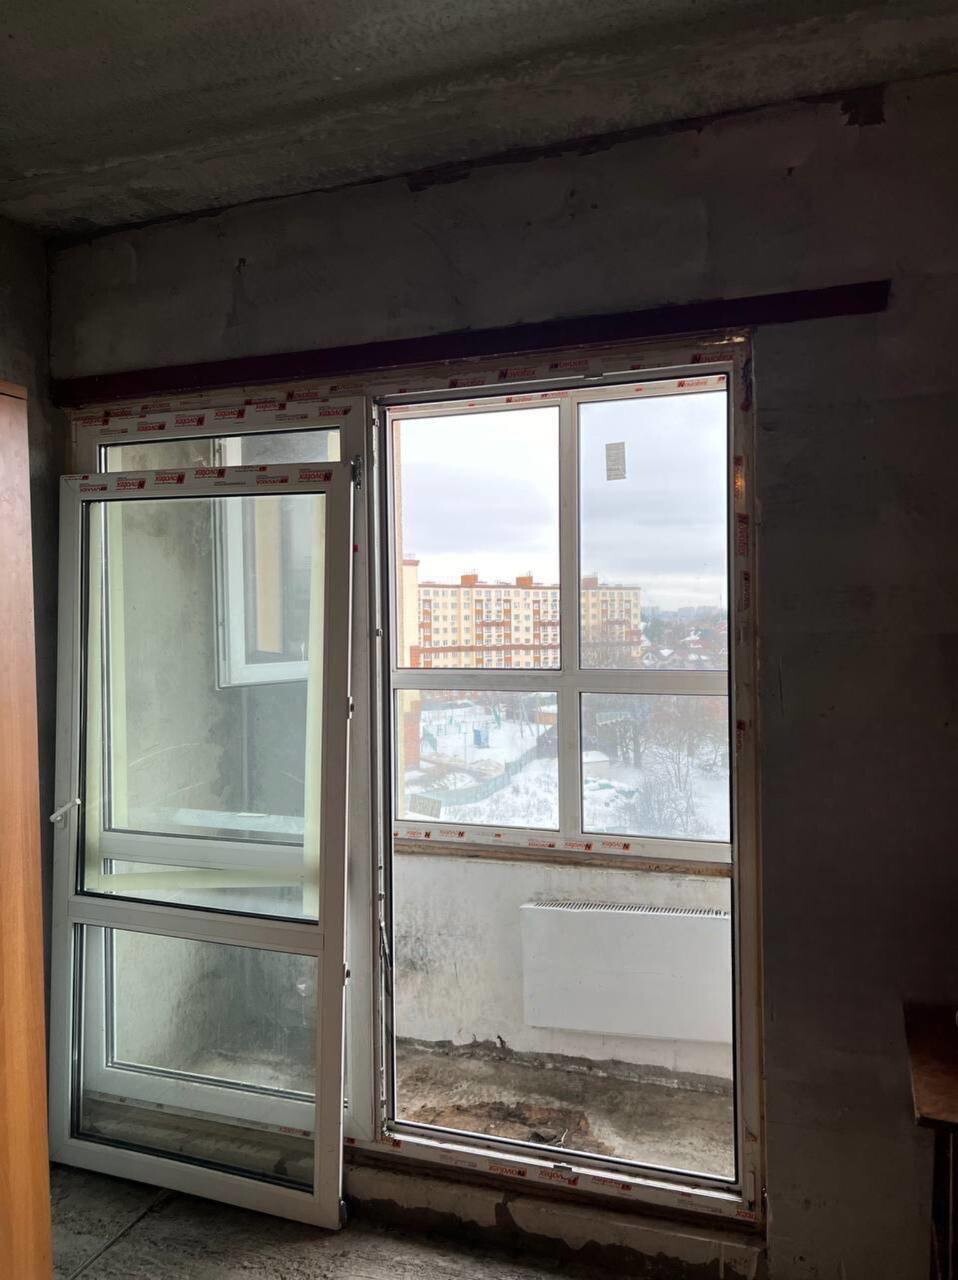 Бетонная коробка за 19 000 в месяц: найдена самая суровая квартира для аренды